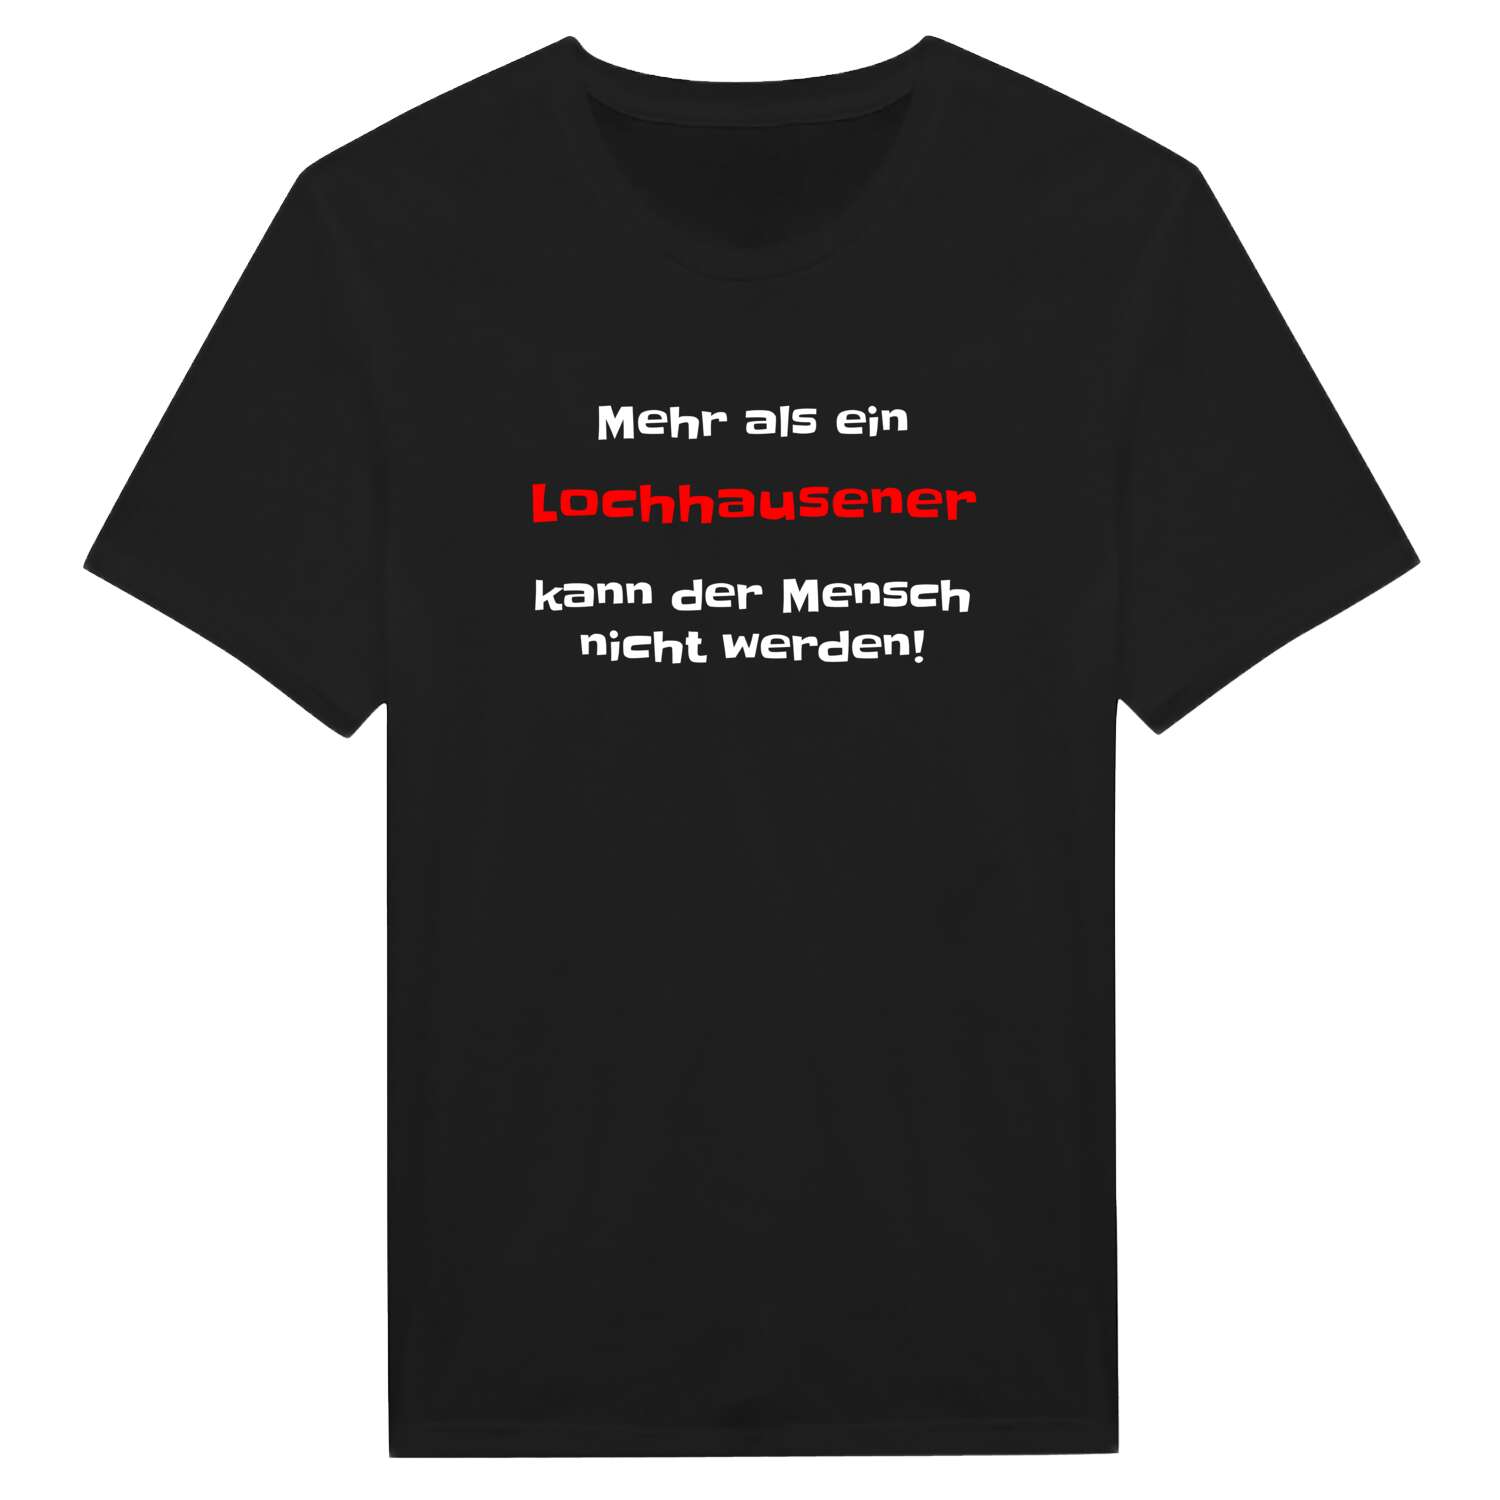 Lochhausen T-Shirt »Mehr als ein«